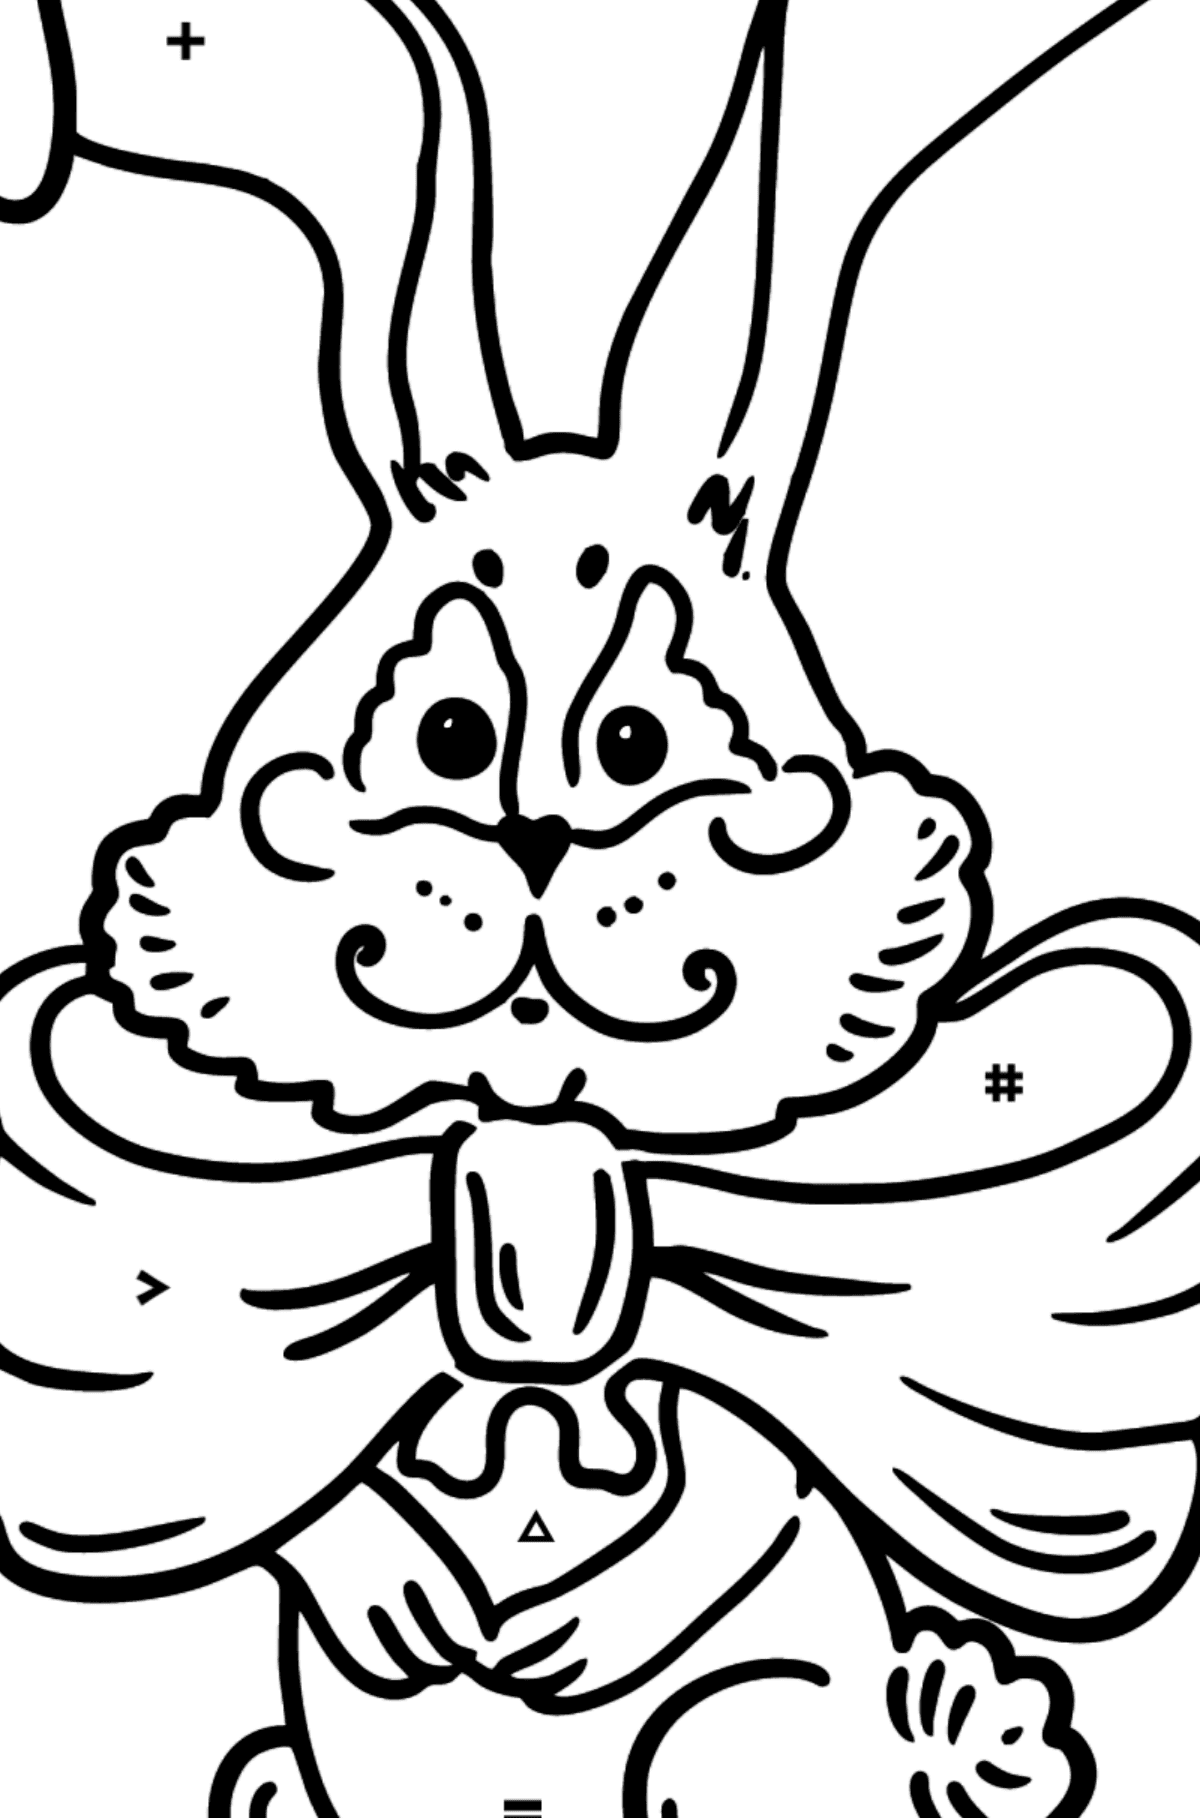 Desenho para colorir do coelho com um arco - Colorir por Símbolos para Crianças